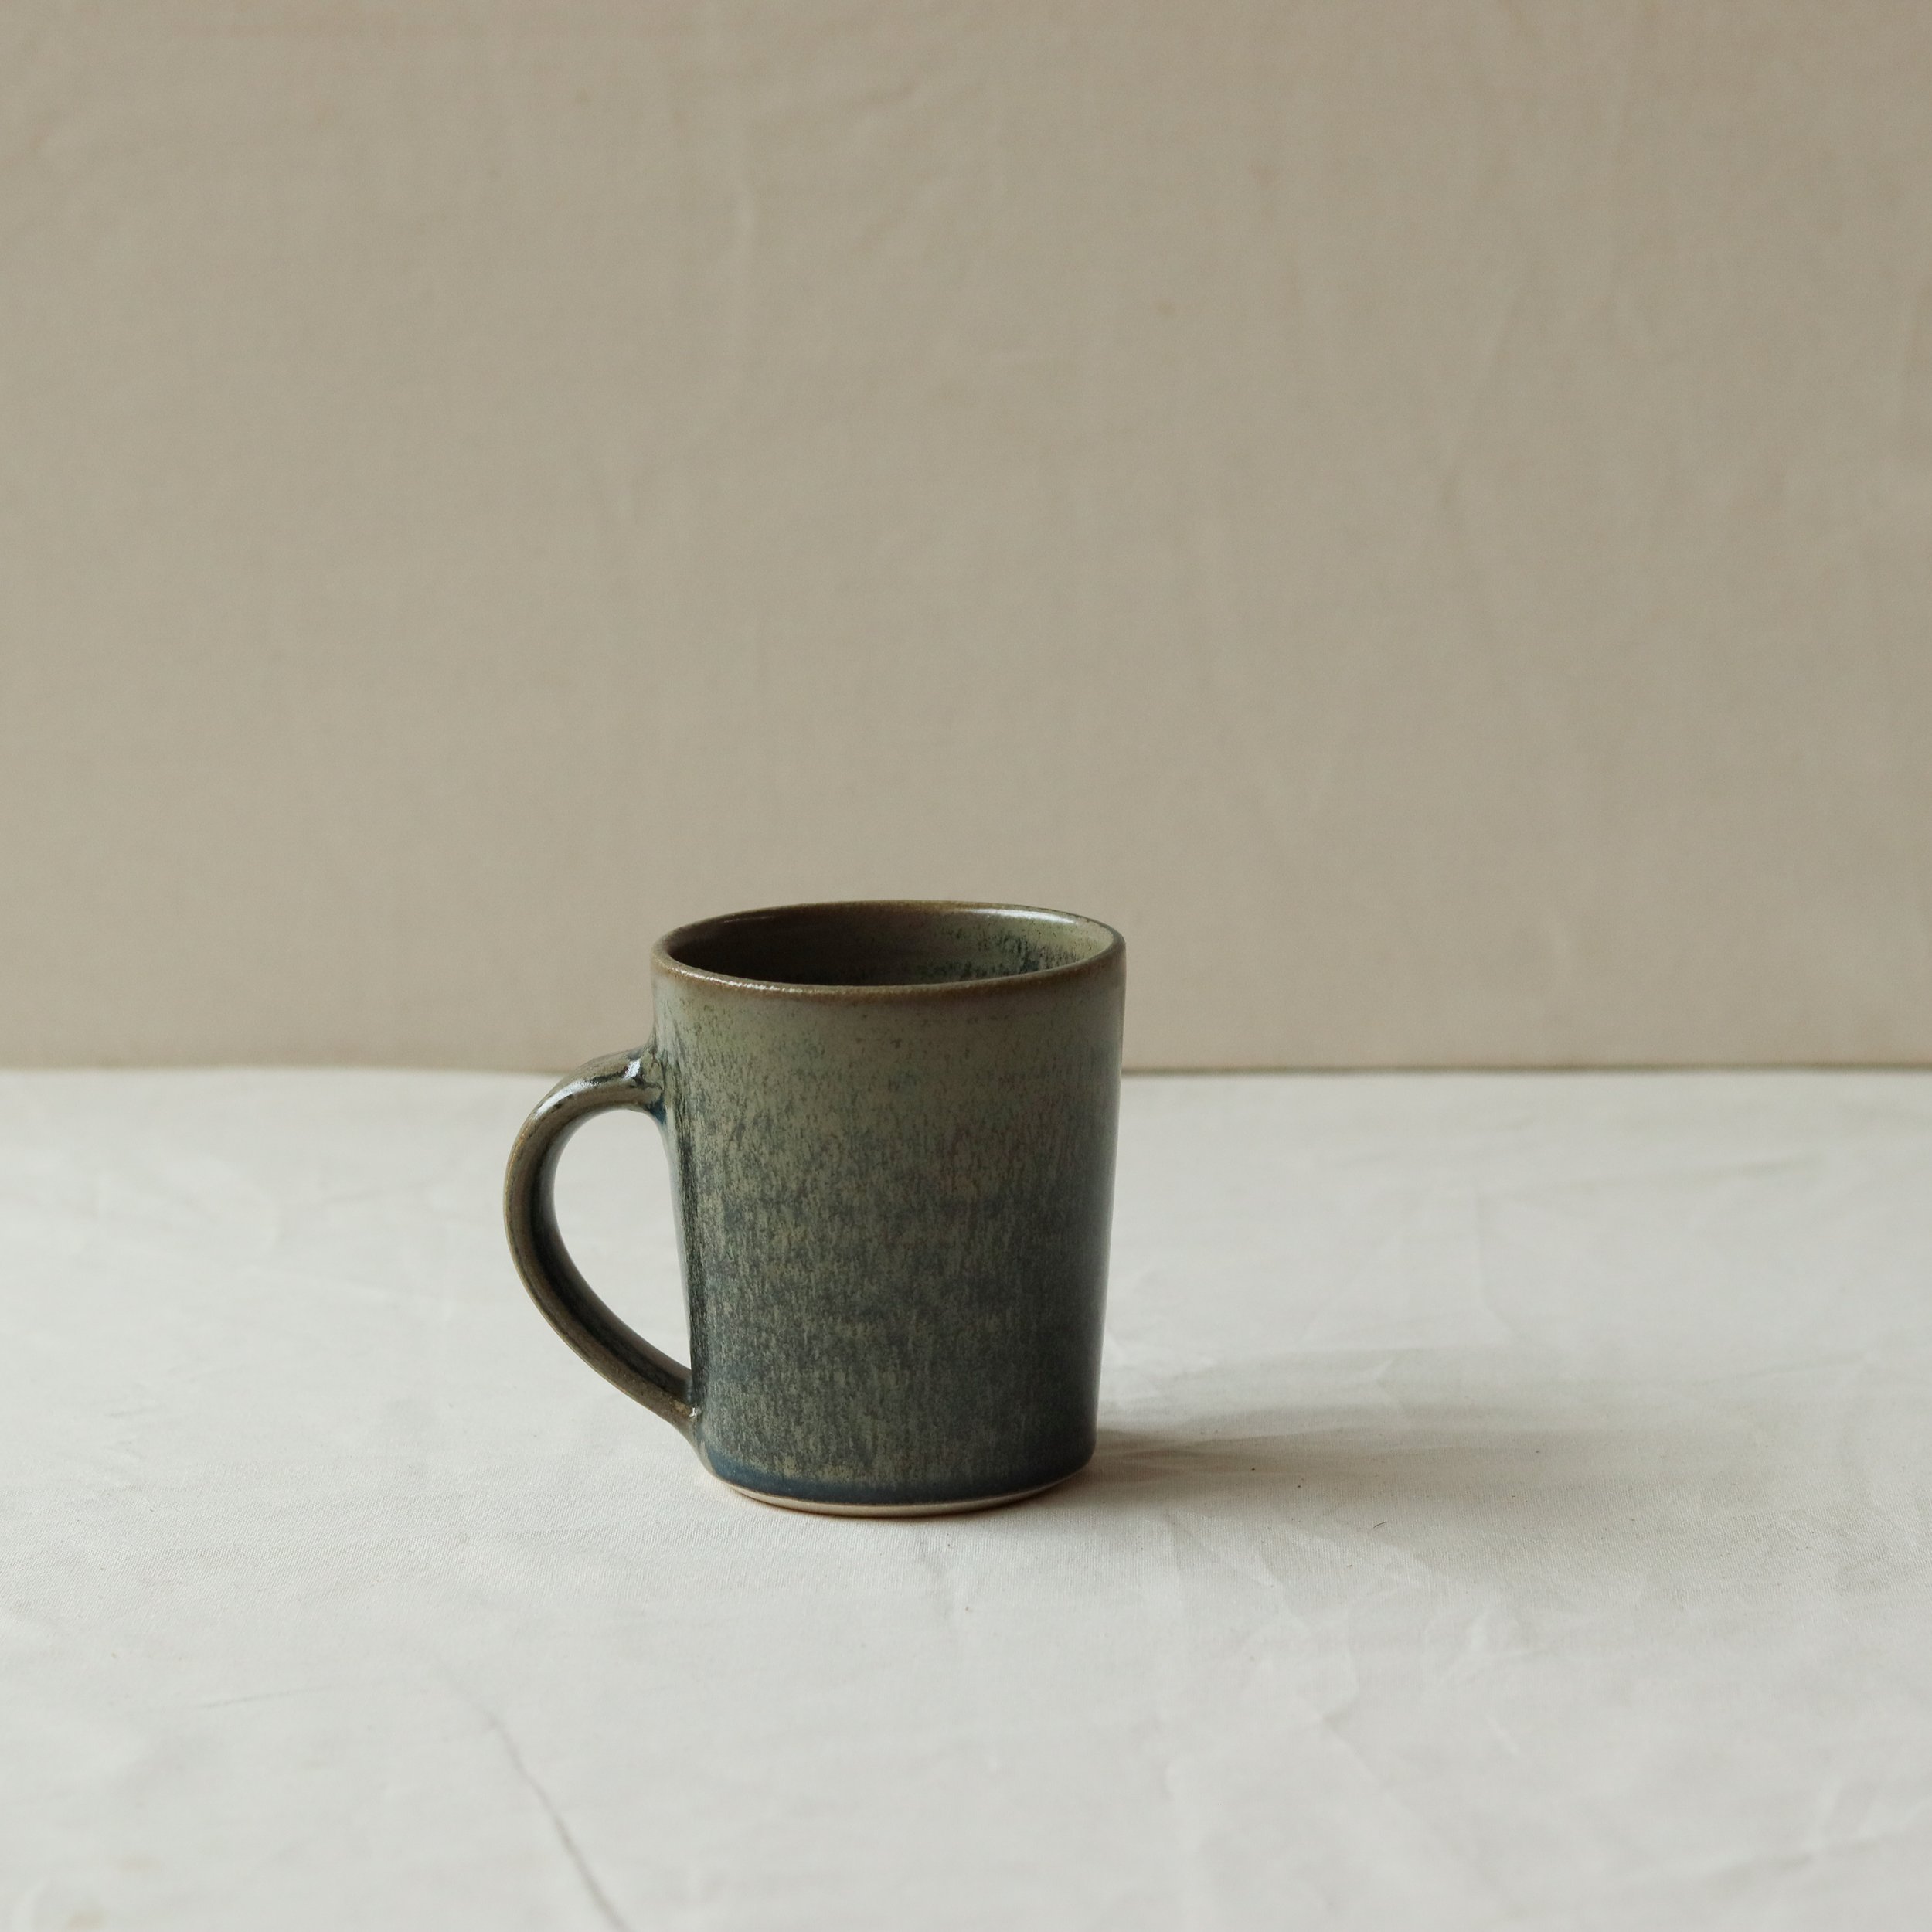 250ml Tapered Mug in Nori, Pale Stoneware-3.jpg